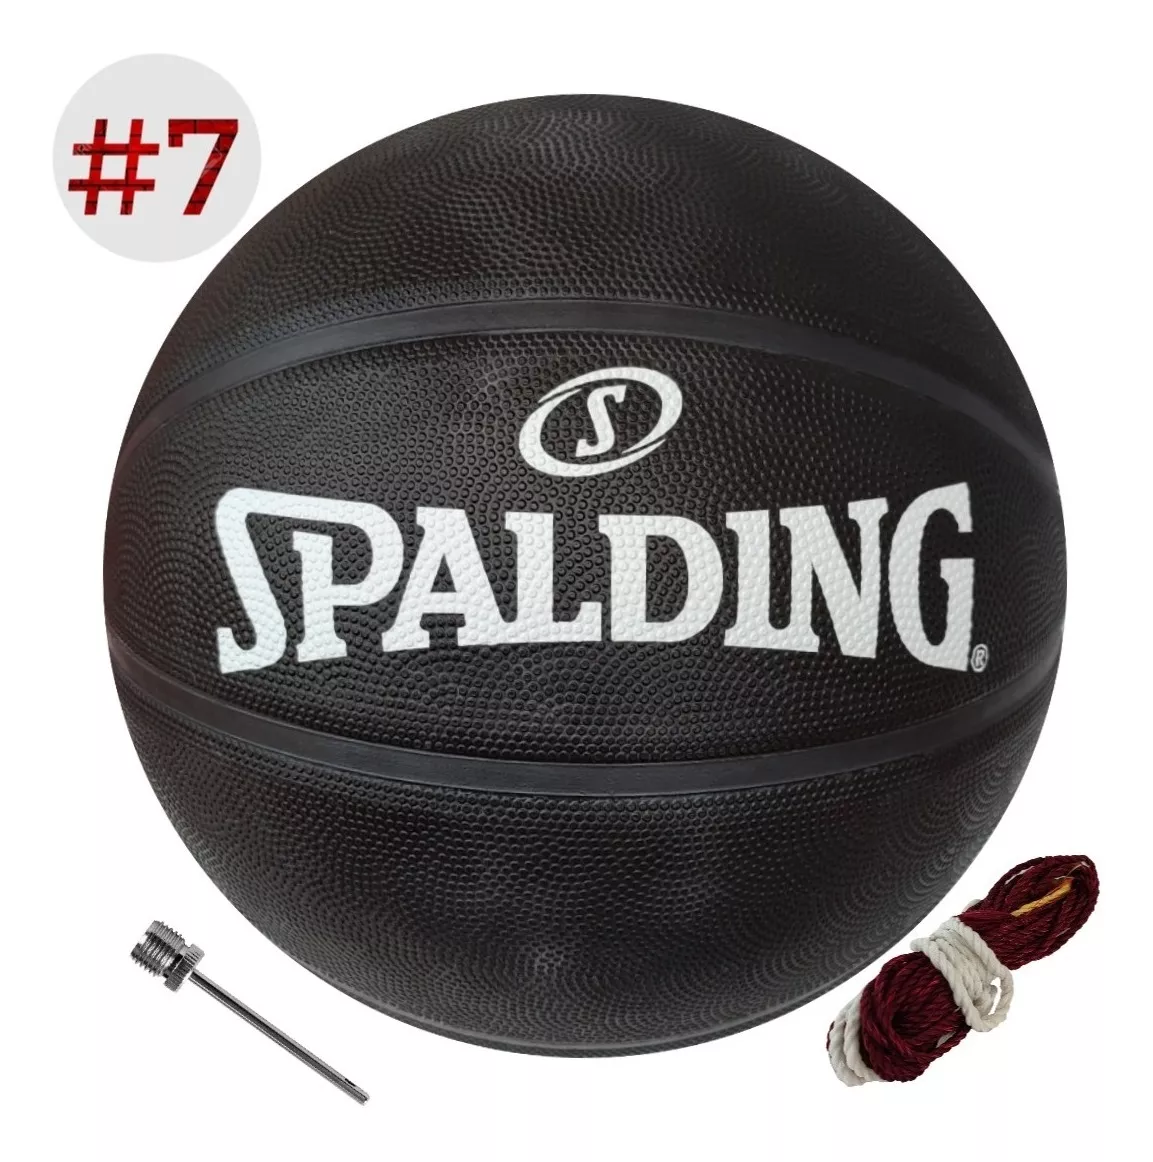 Balón De Básquet Spalding Original #7 Nuevo Modelo Nba